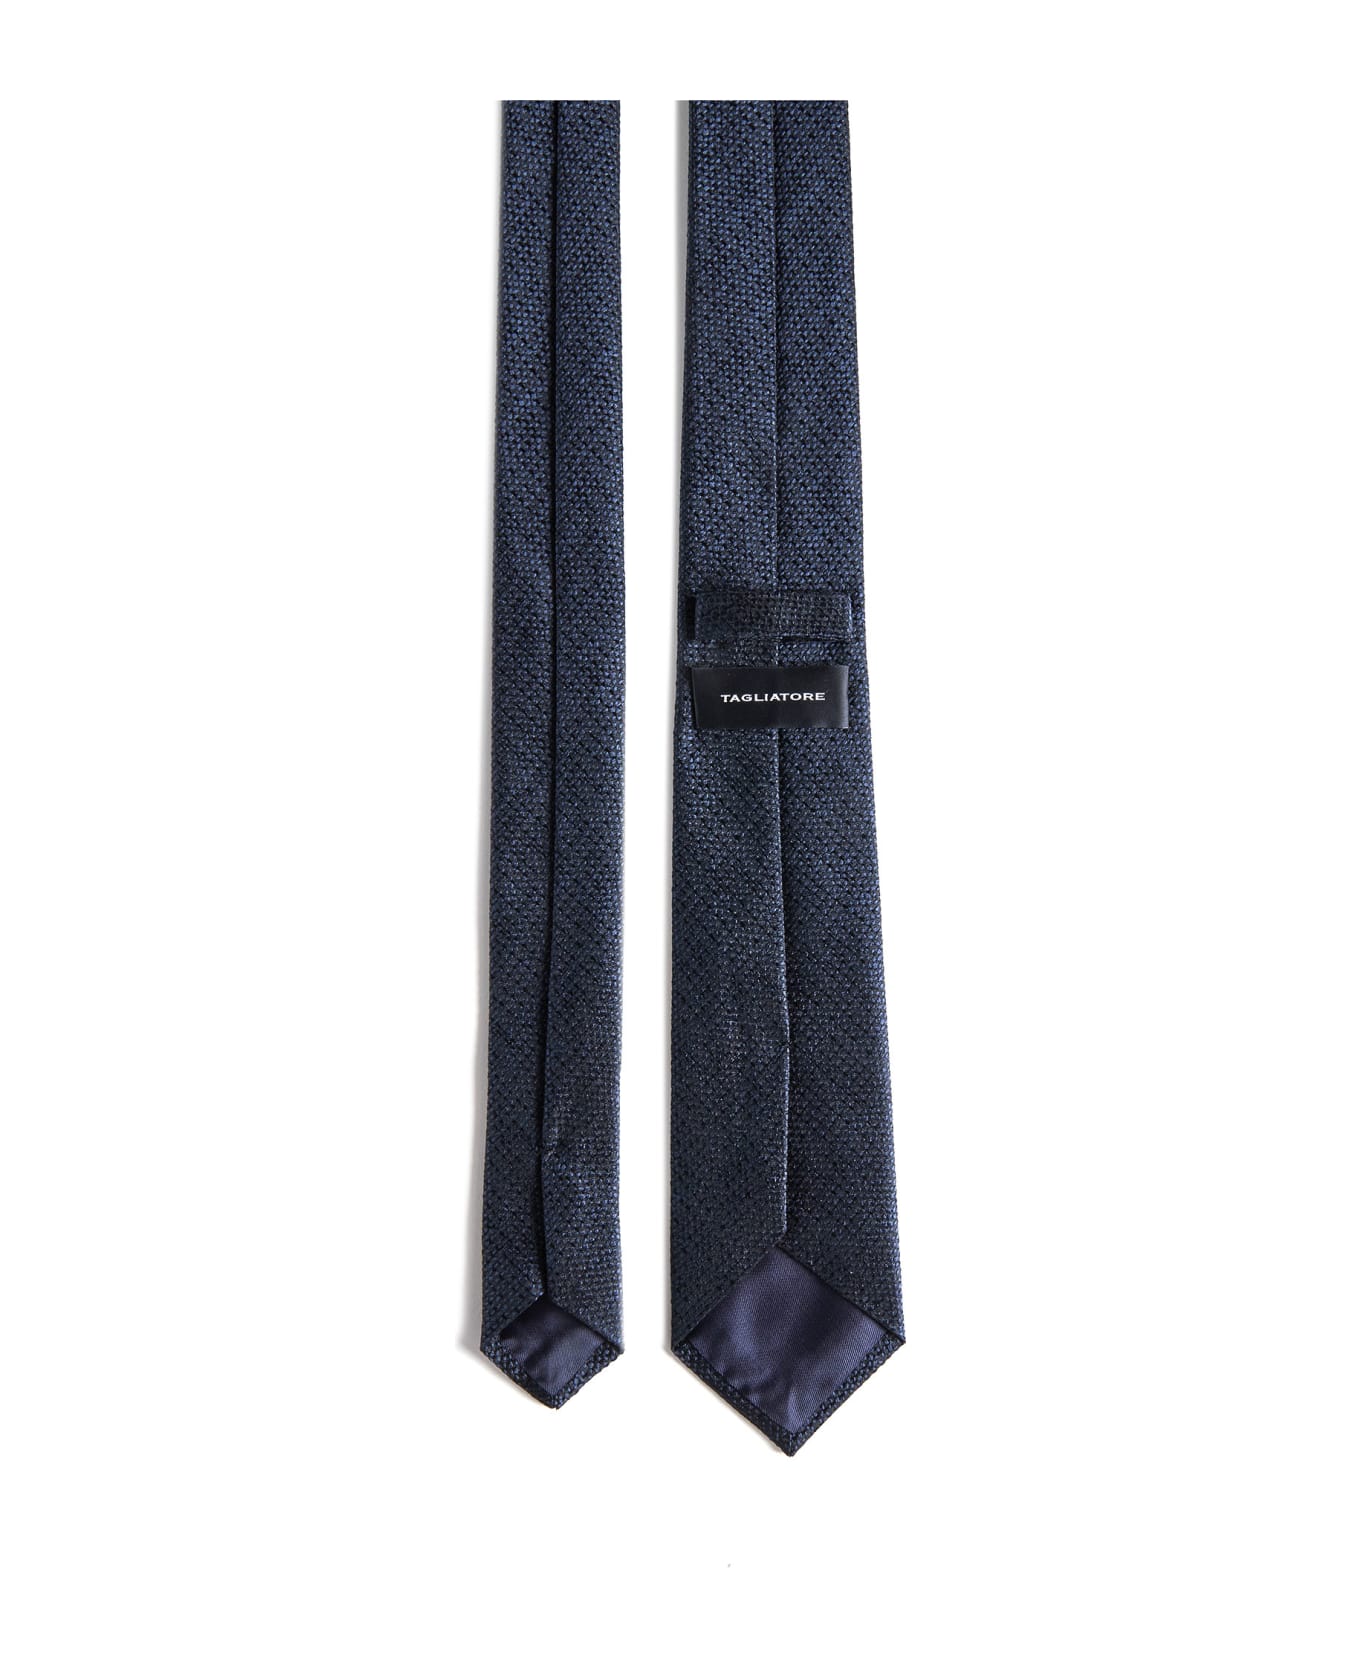 Tagliatore Tie - Blu